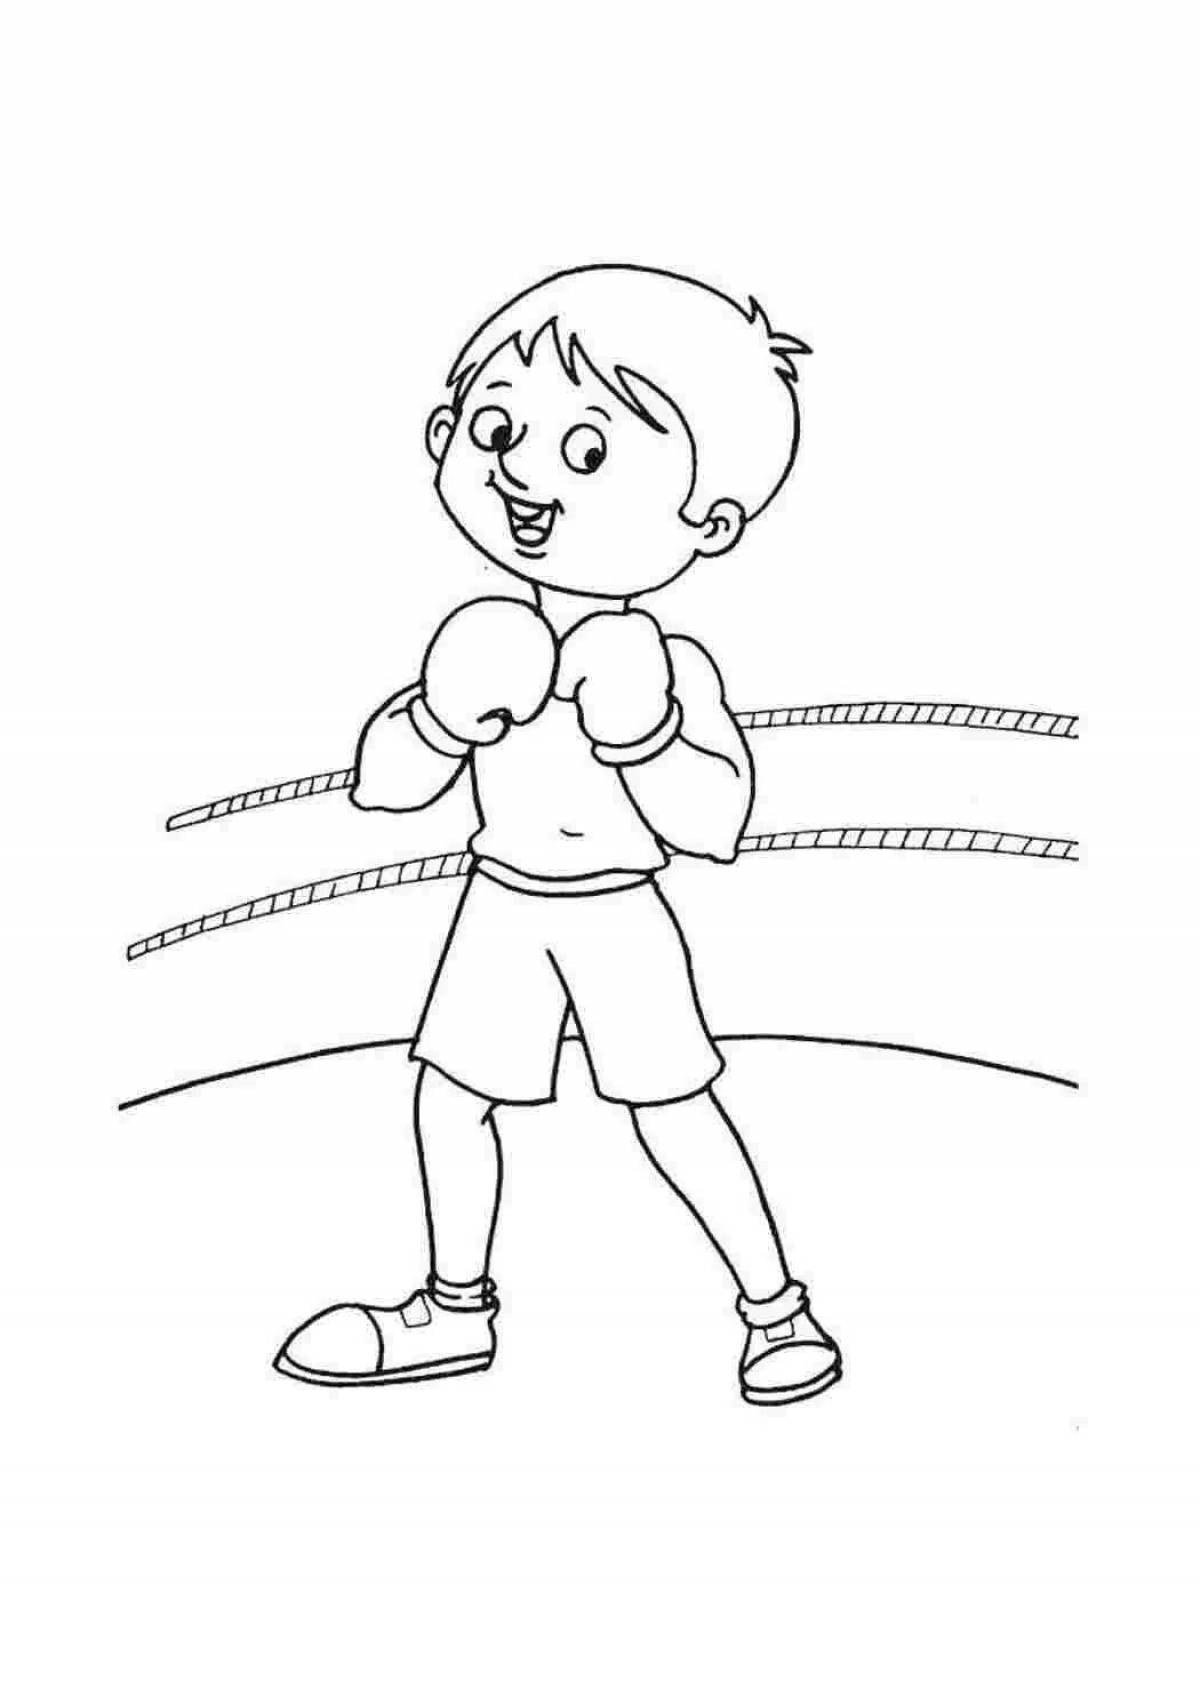 Милая раскраска бокса для детей